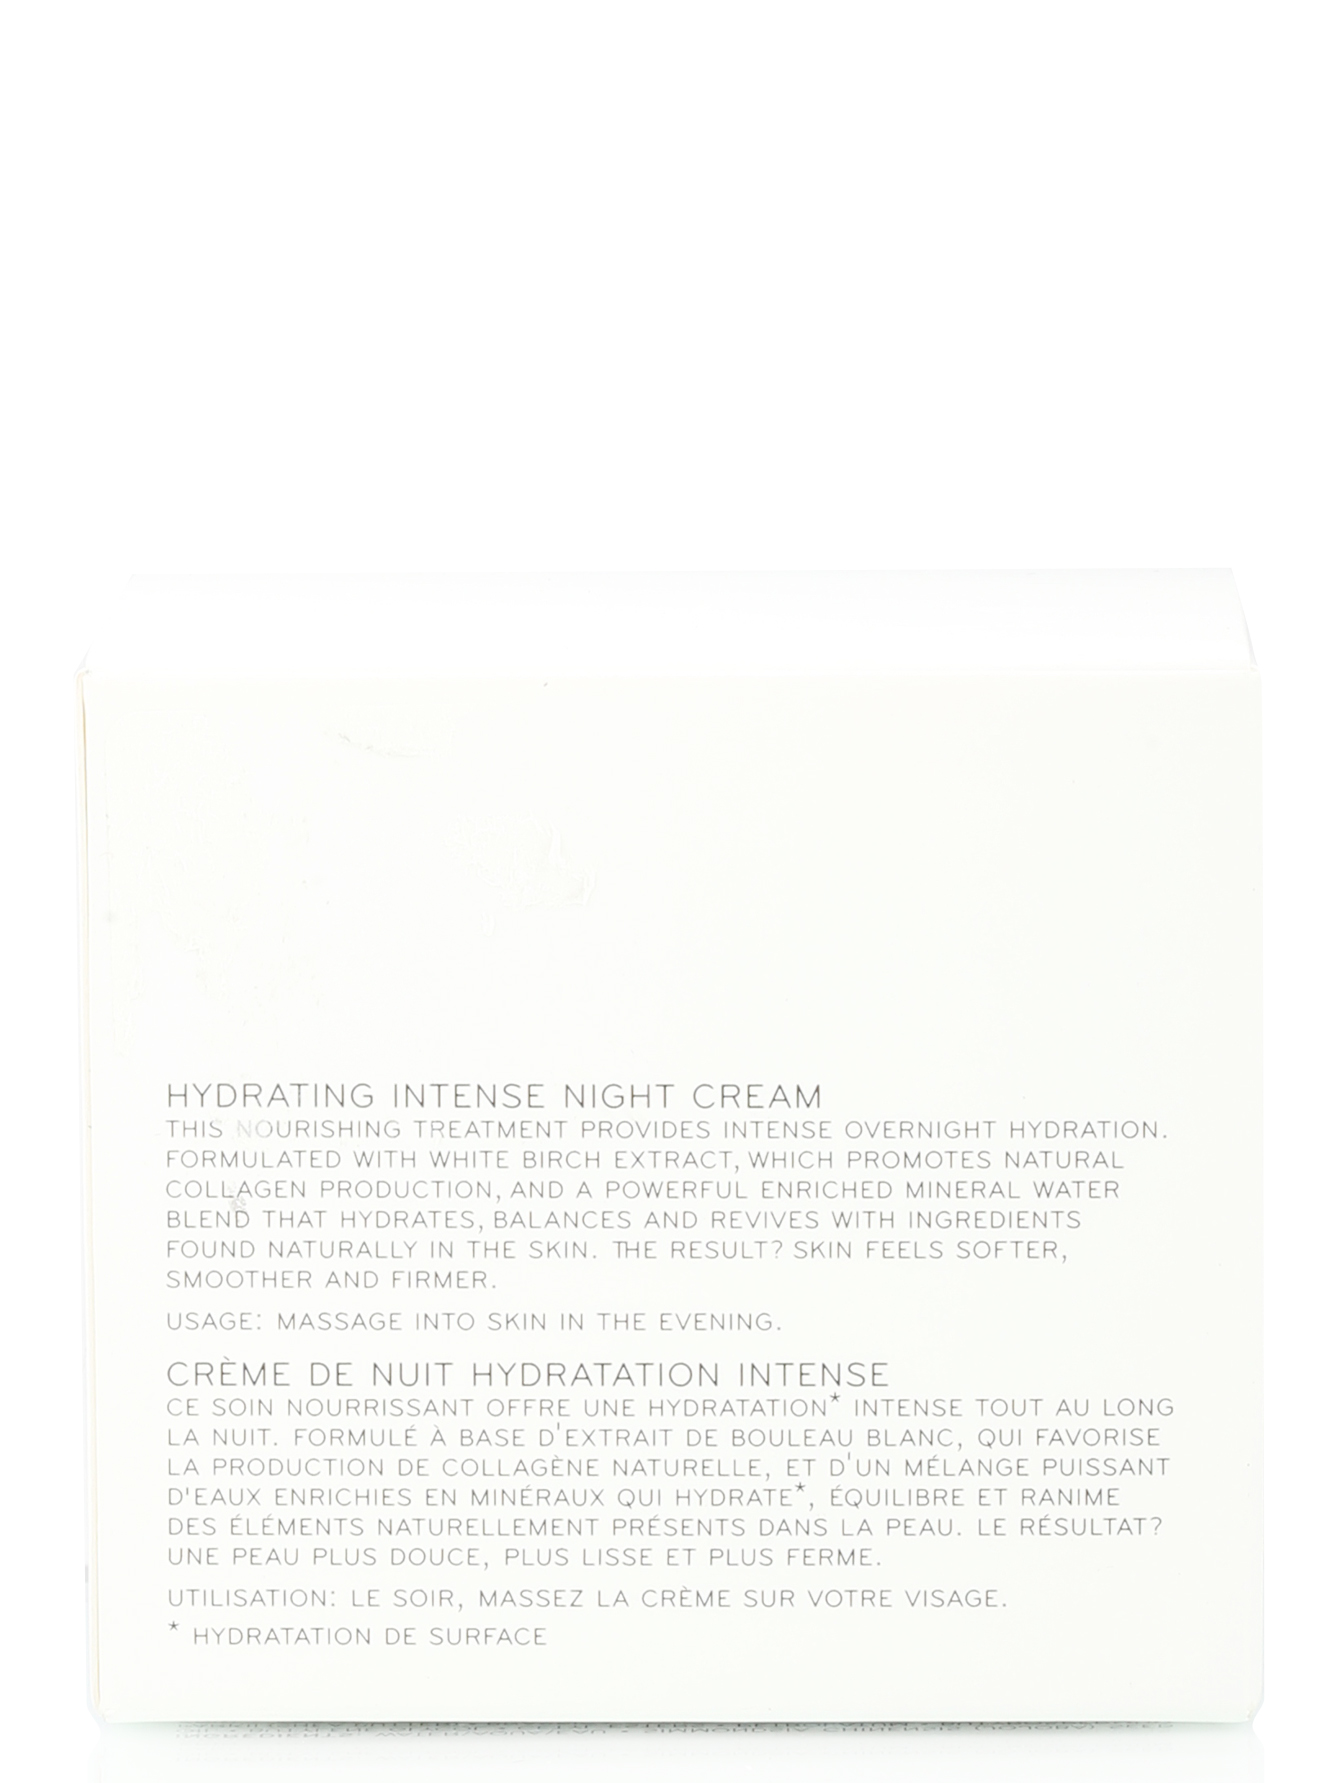 Ночной крем для лица - Skin Care, 50ml - Модель Верх-Низ